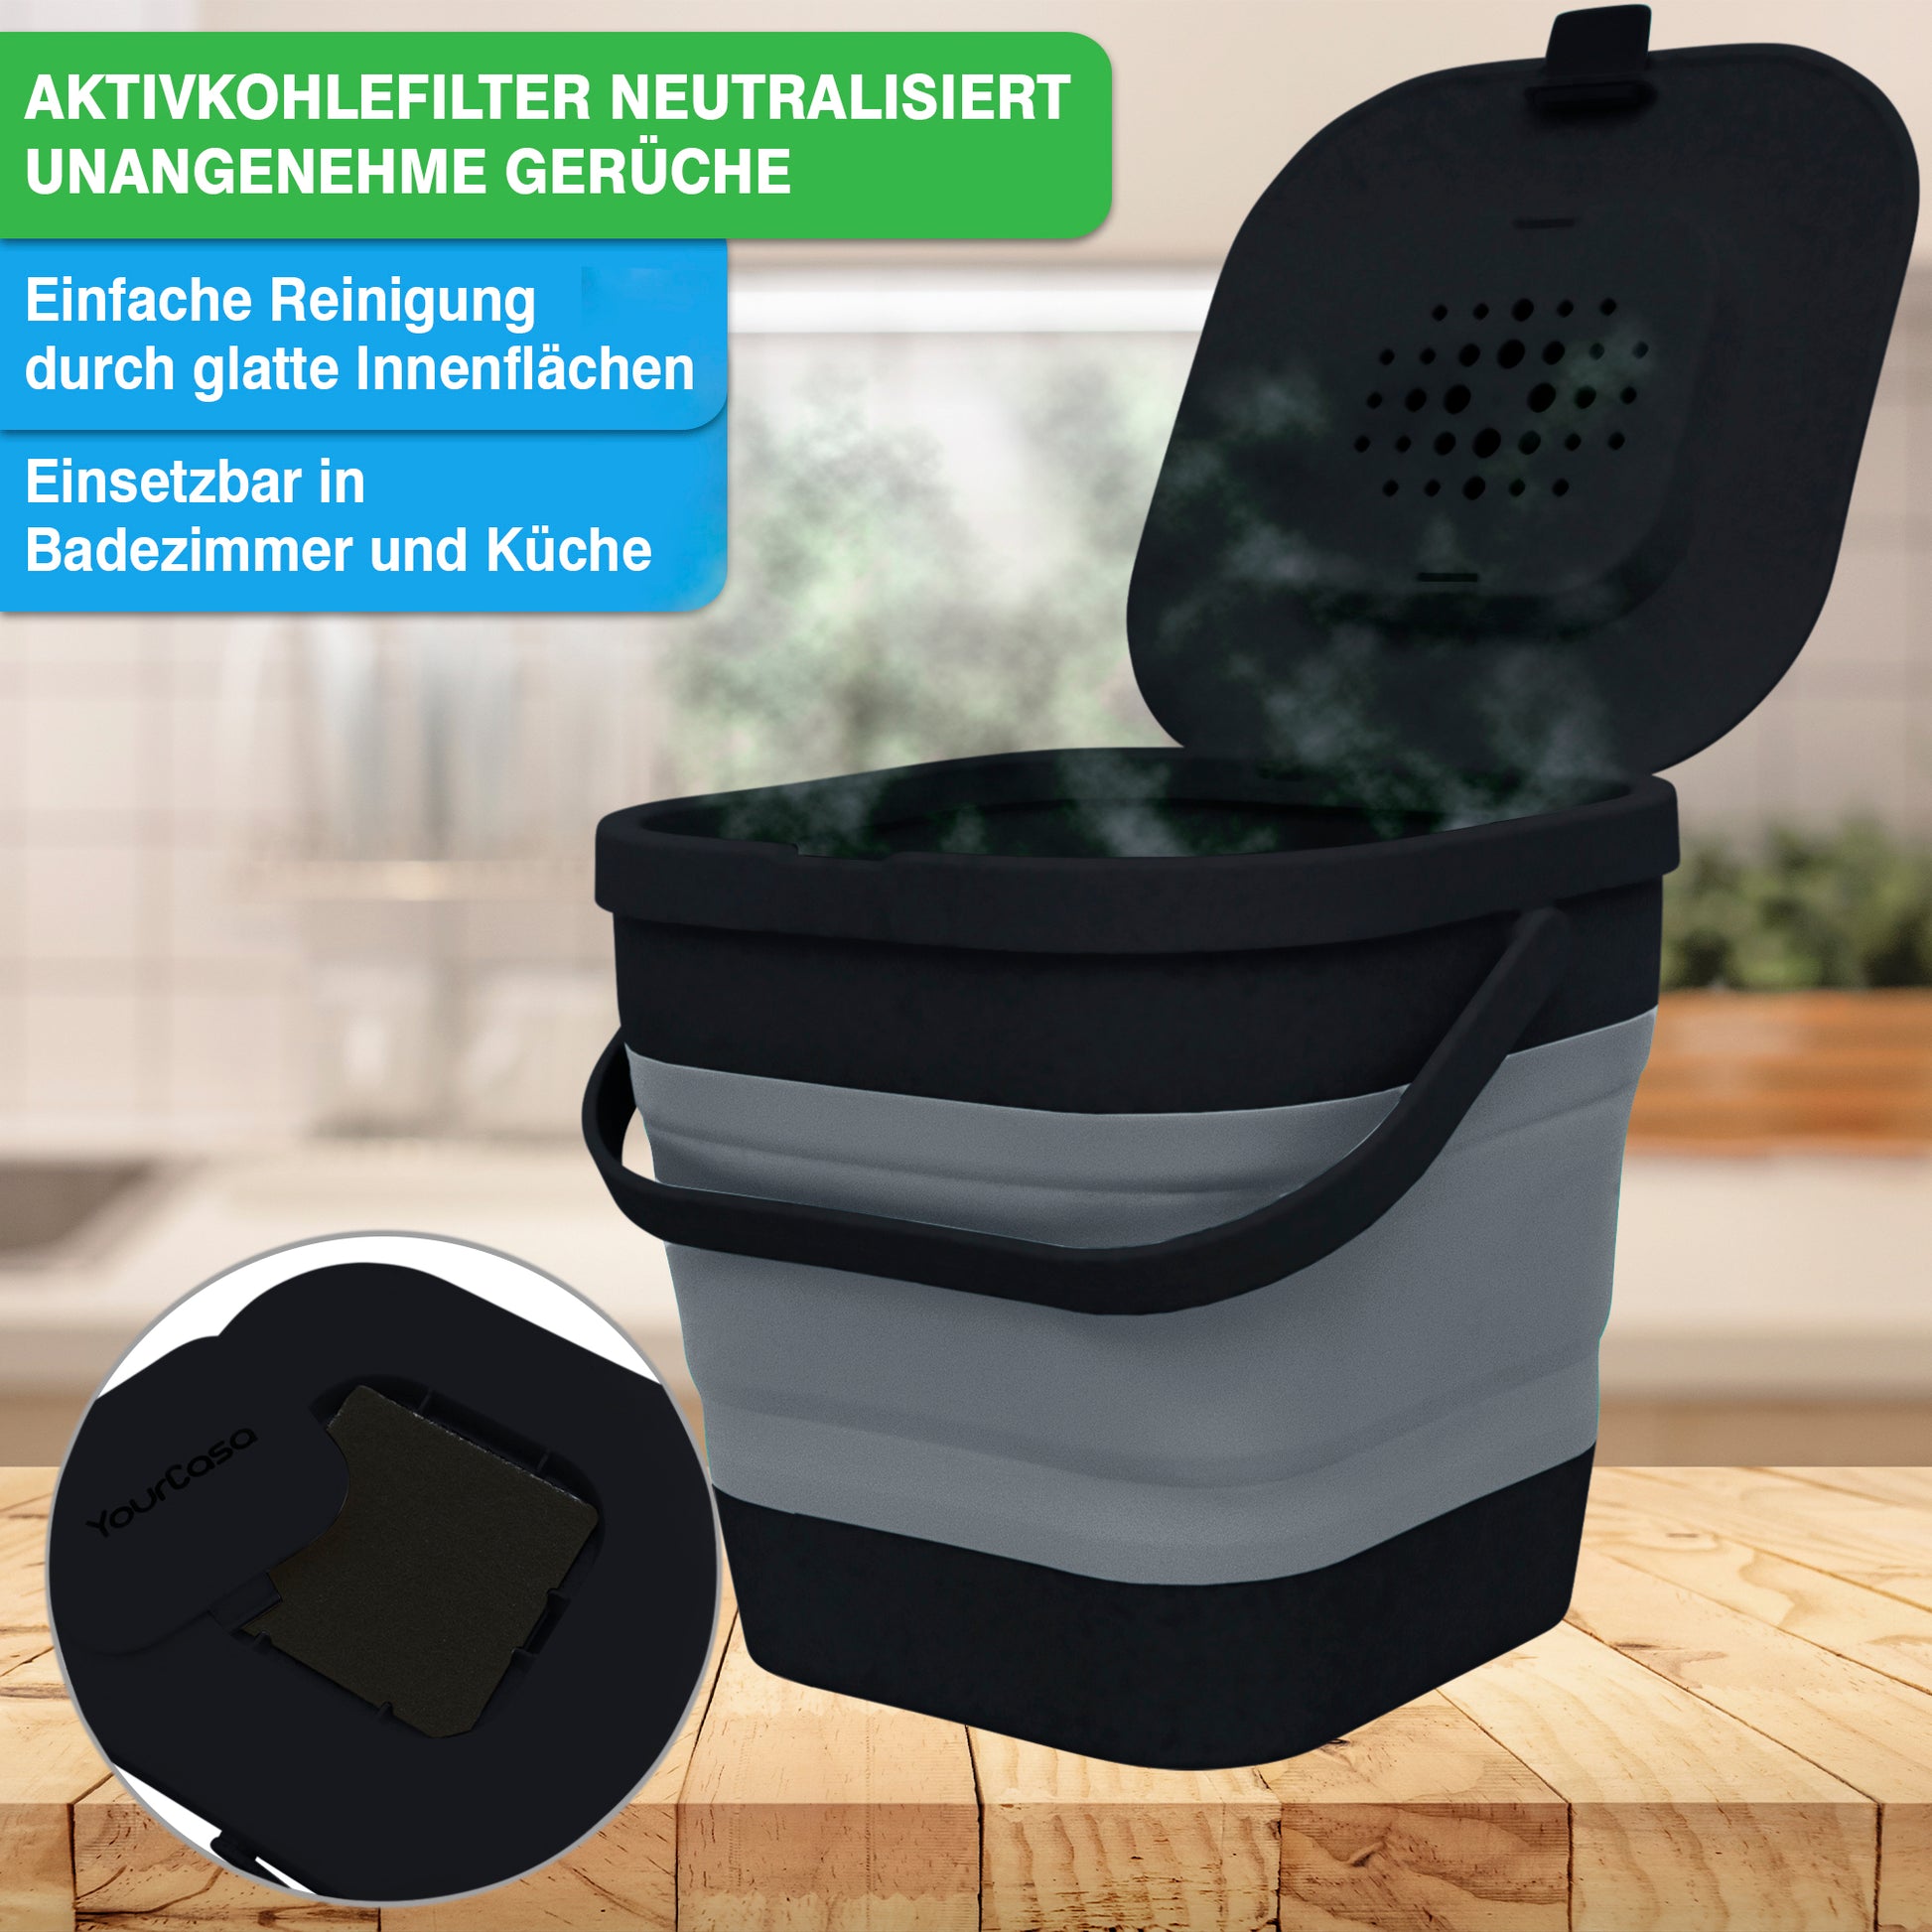 Ein Luftfilterbehälter mit YourCasa® Komposteimer Küche – FALTBAR und NACHHALTIG – 4L Fassungsvermögen-Funktion zur Neutralisierung von Gerüchen, geeignet für den Einsatz im Bad und in der Küche.